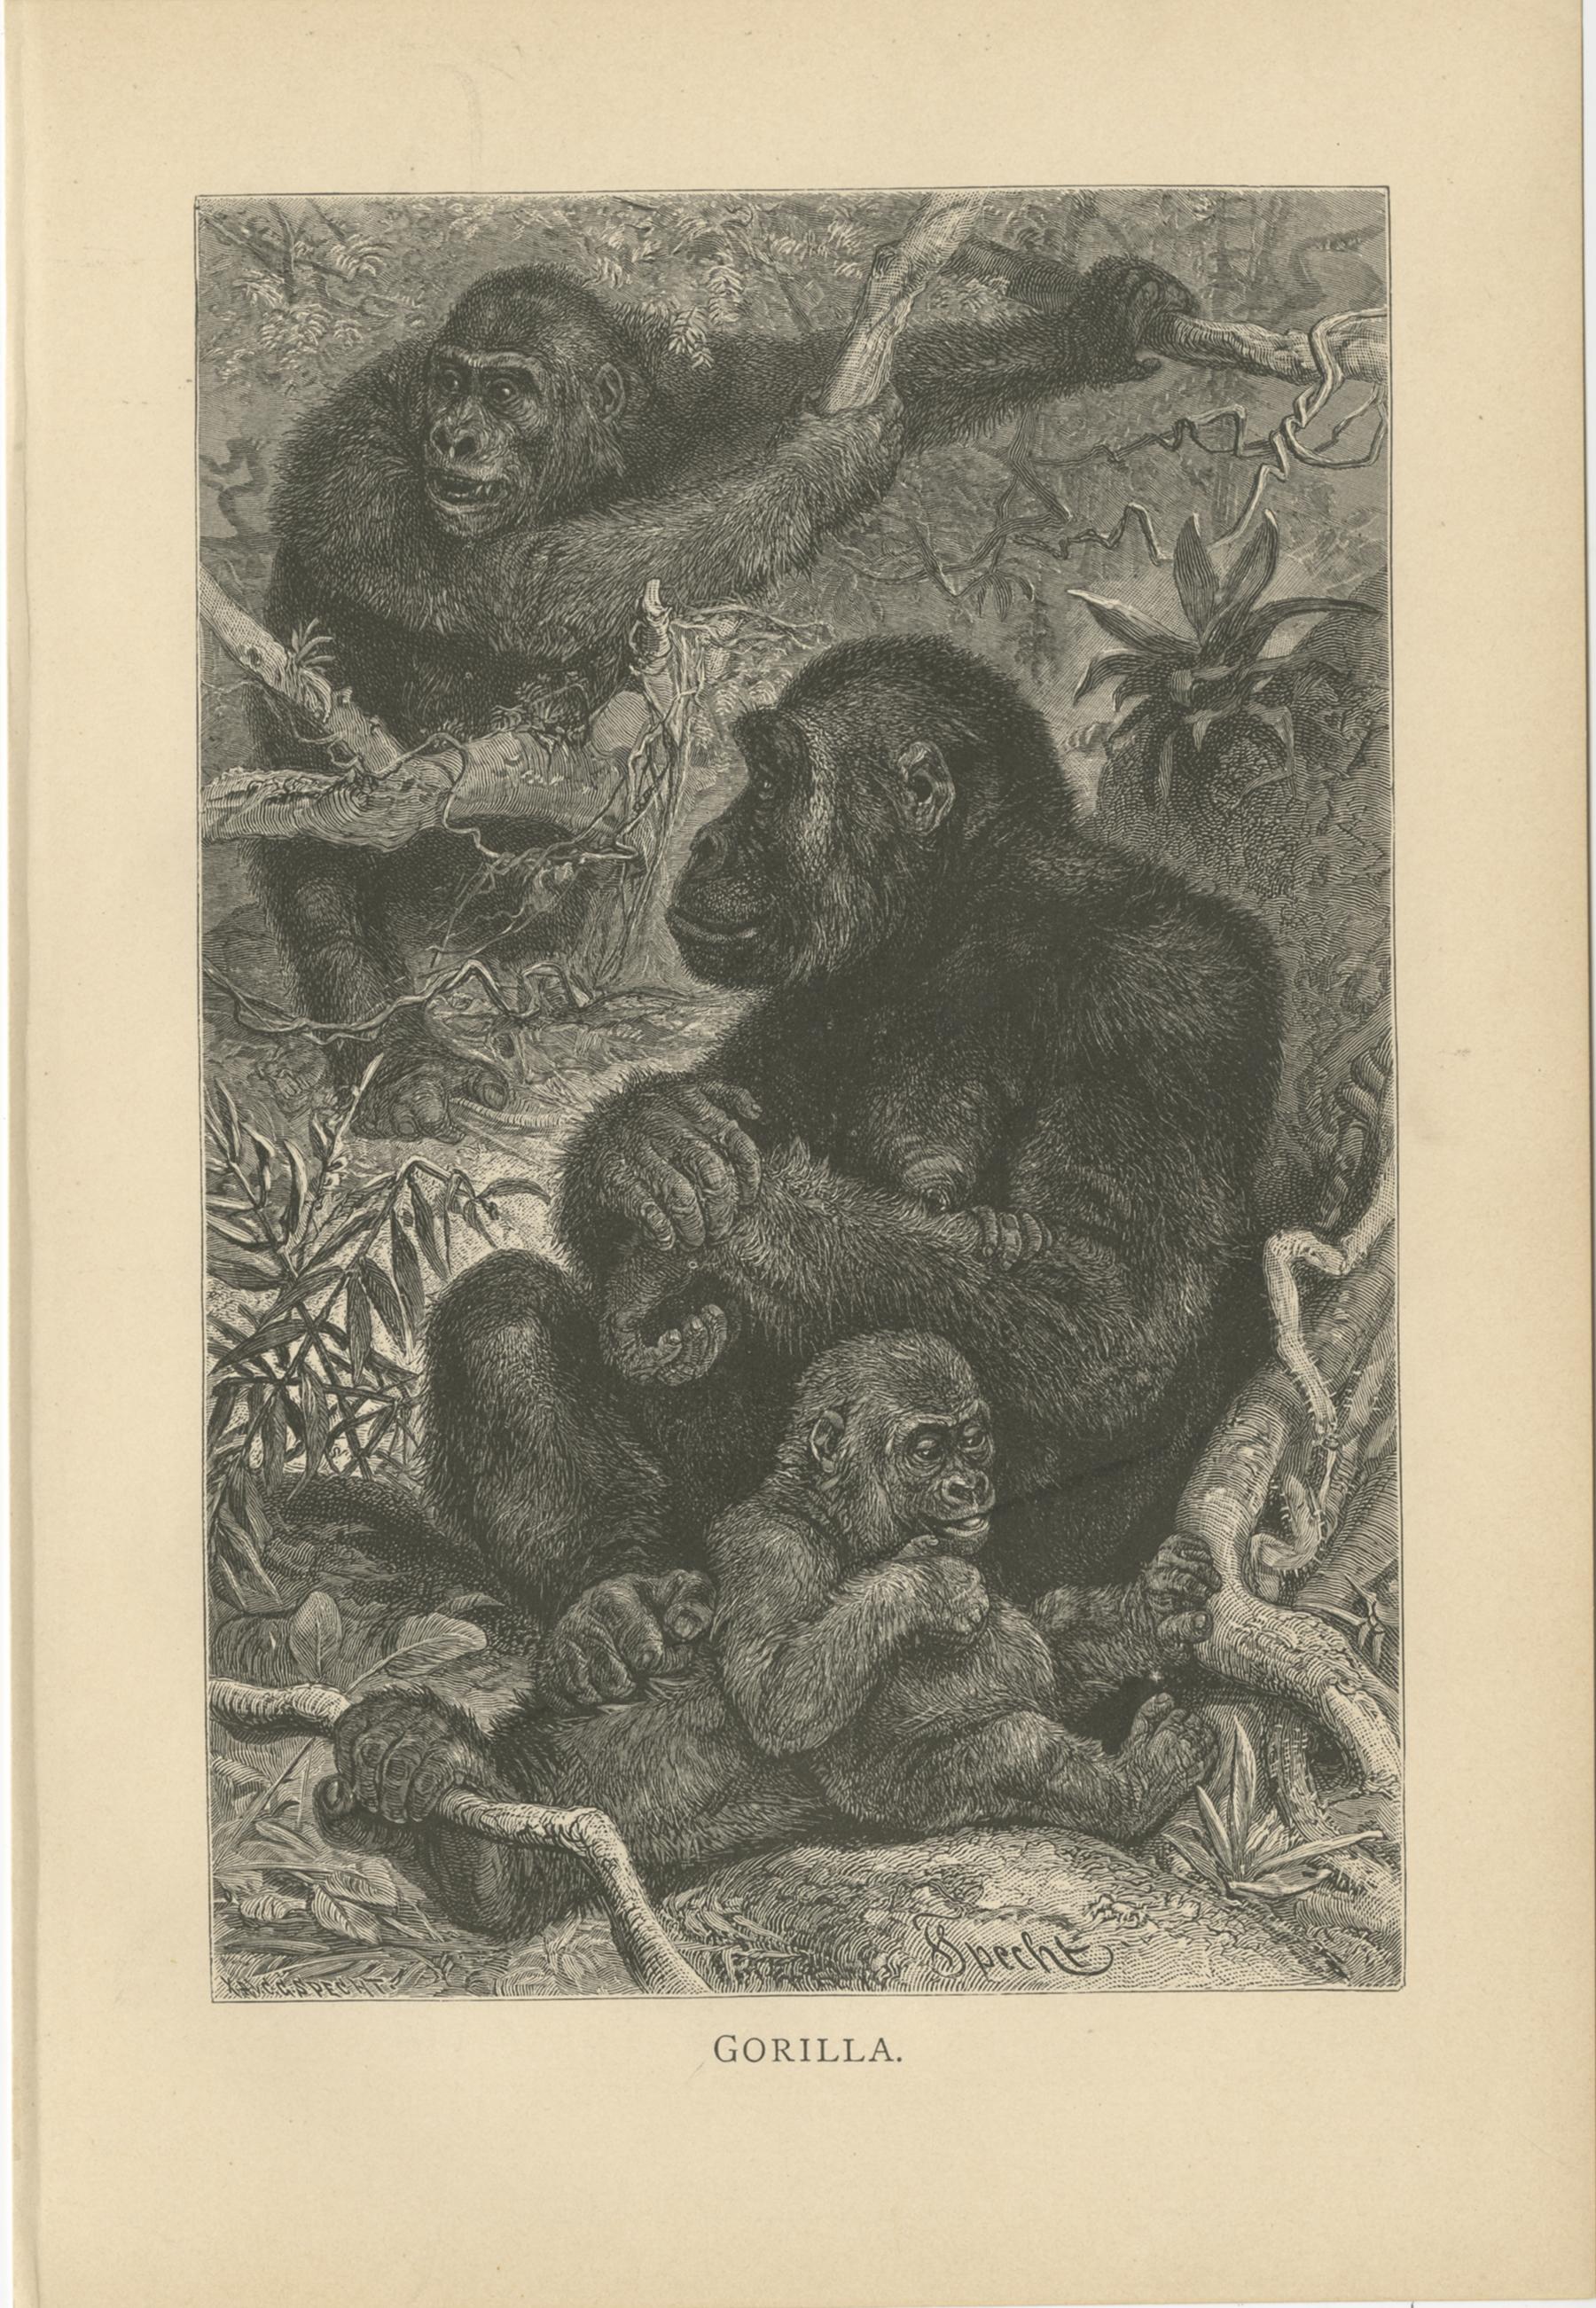 Set of five antique prints of monkeys including:

1) Gorilla
2) Schimpanse - Chimpanzee
3) Nachtaffe - Night Monkey
4) Grünaffe - Green Monkey
5) Orang-Utan - Orangutan 

These prints originate from 'Brehms Tierleben : allgemeine Kunde des